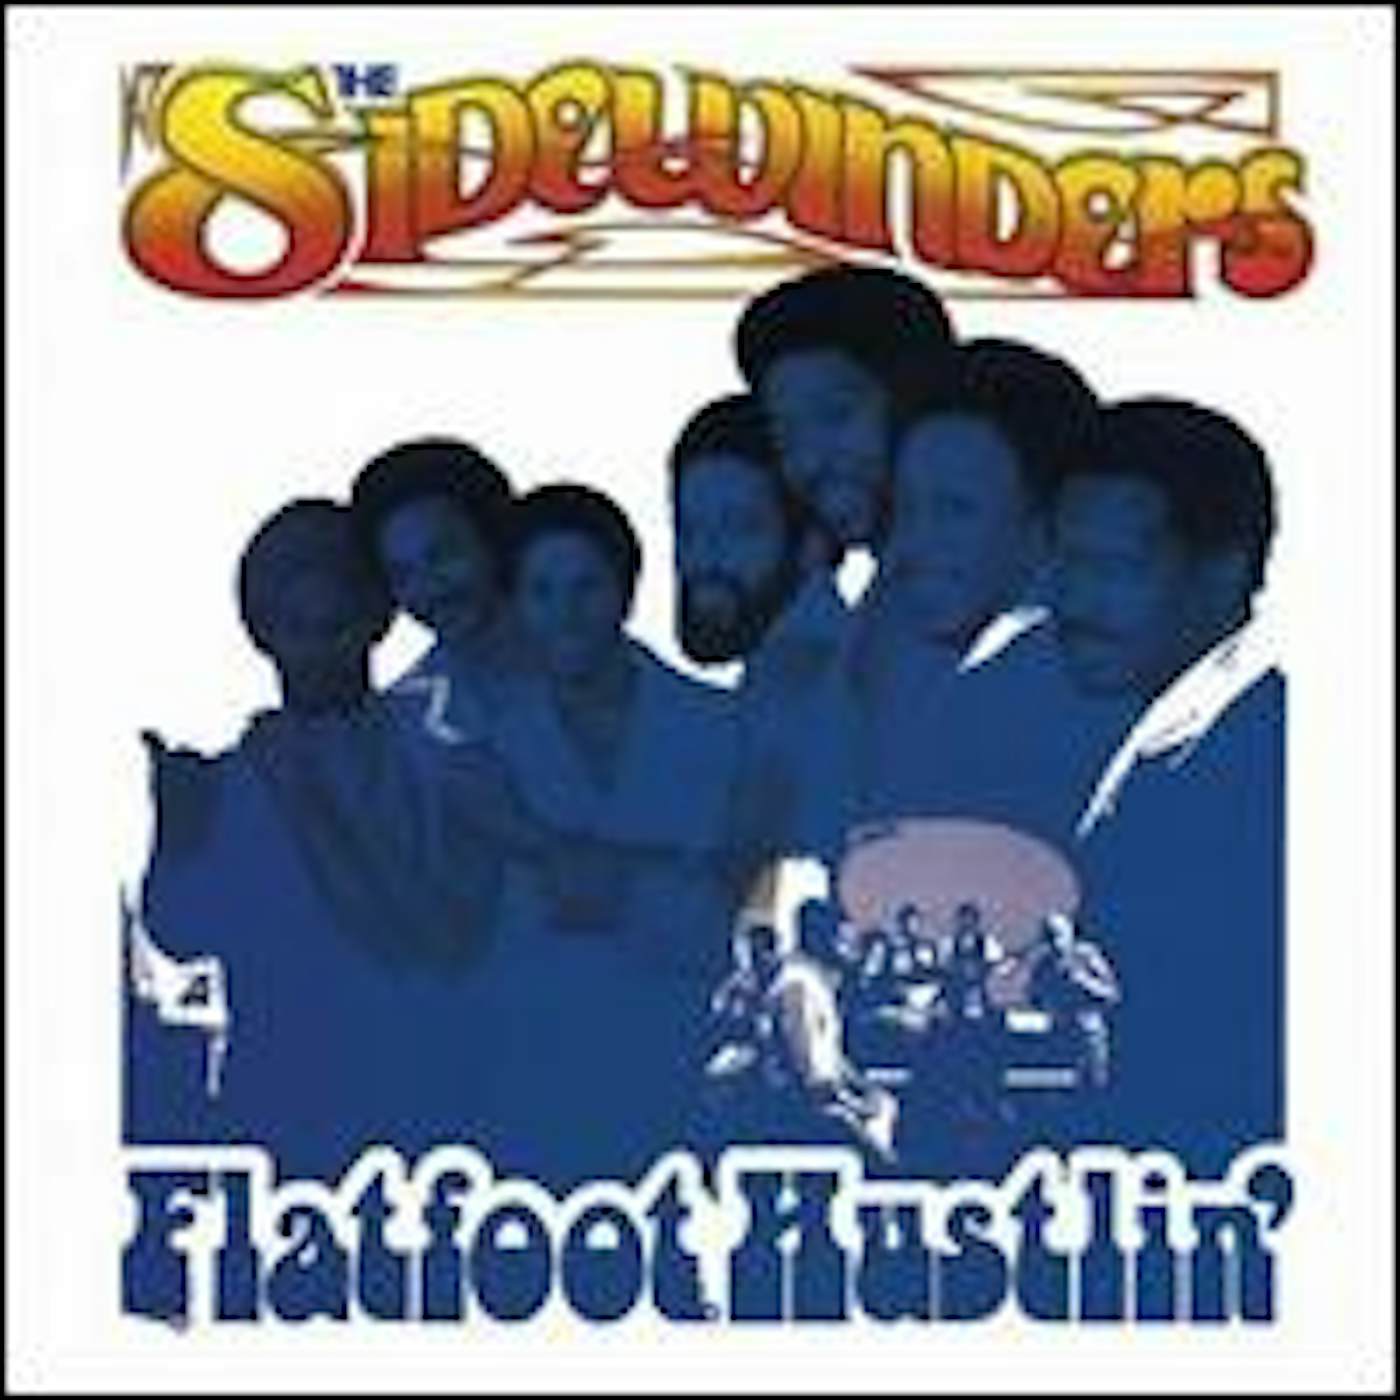 Sidewinders FLATFOOT HUSTLIN' (FRA) (Vinyl)